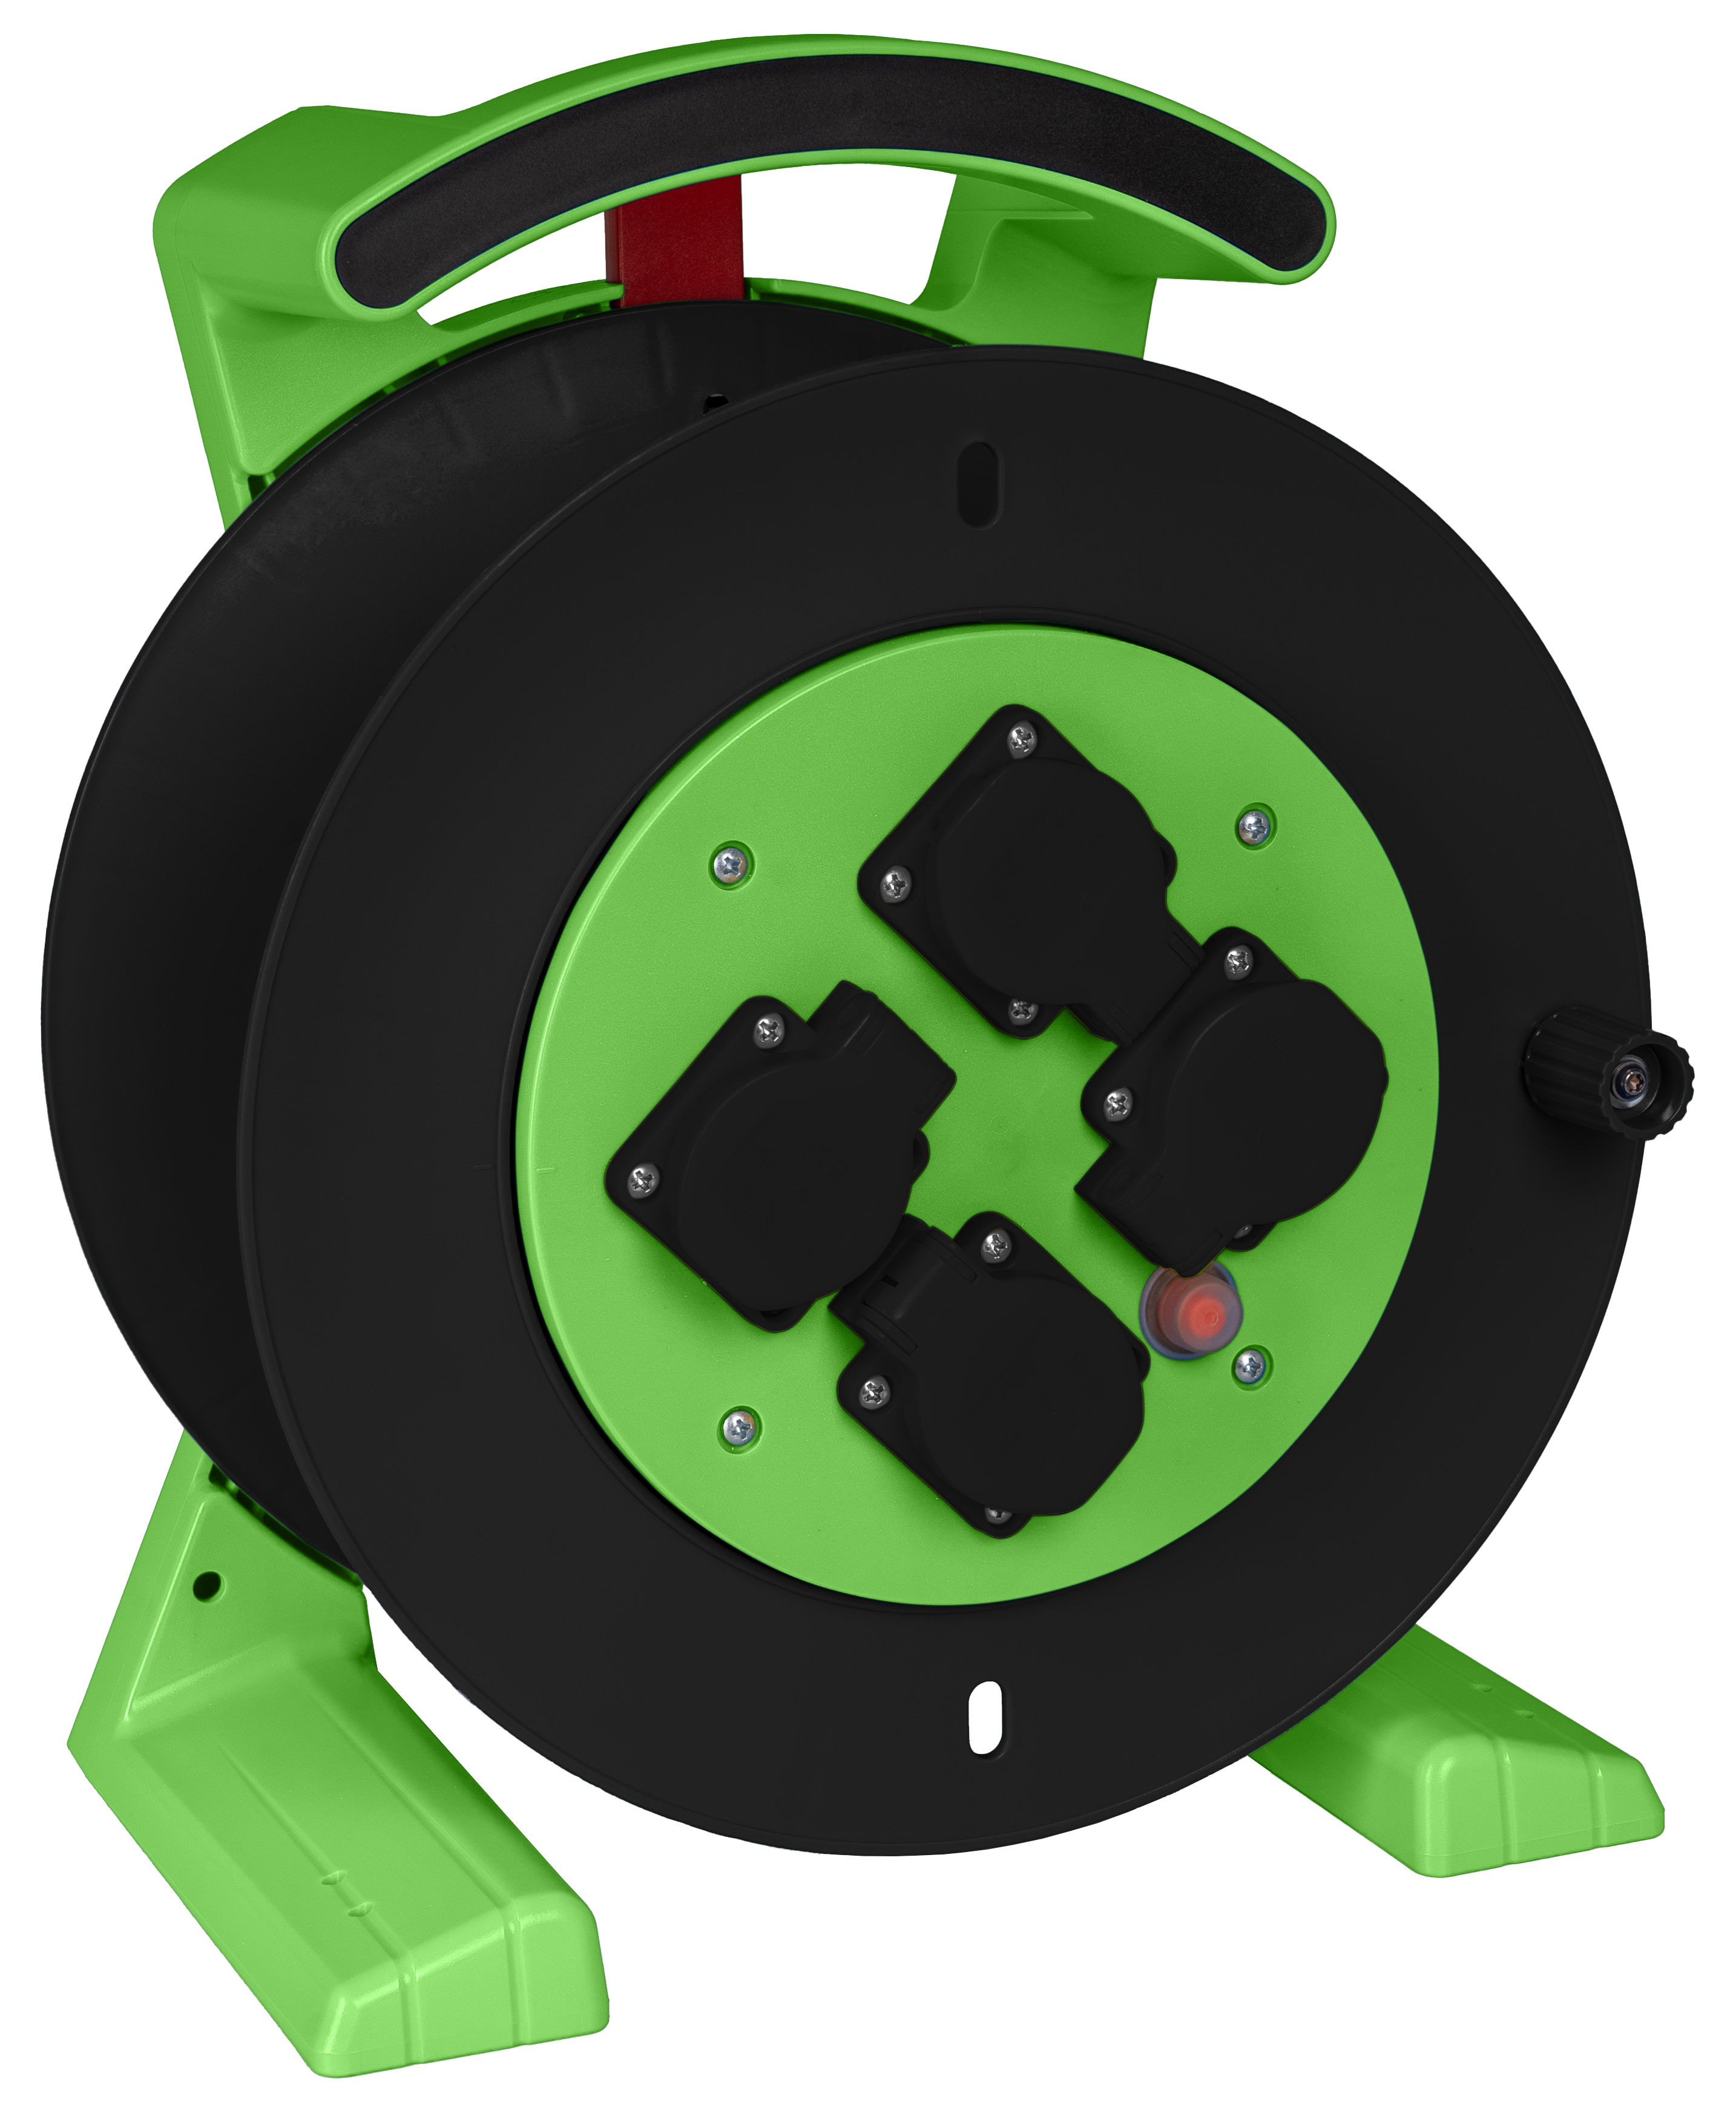 JUMBO kabelhaspel 2.0, lege haspel in groen-zwart, 4 stootvaste contactdozen